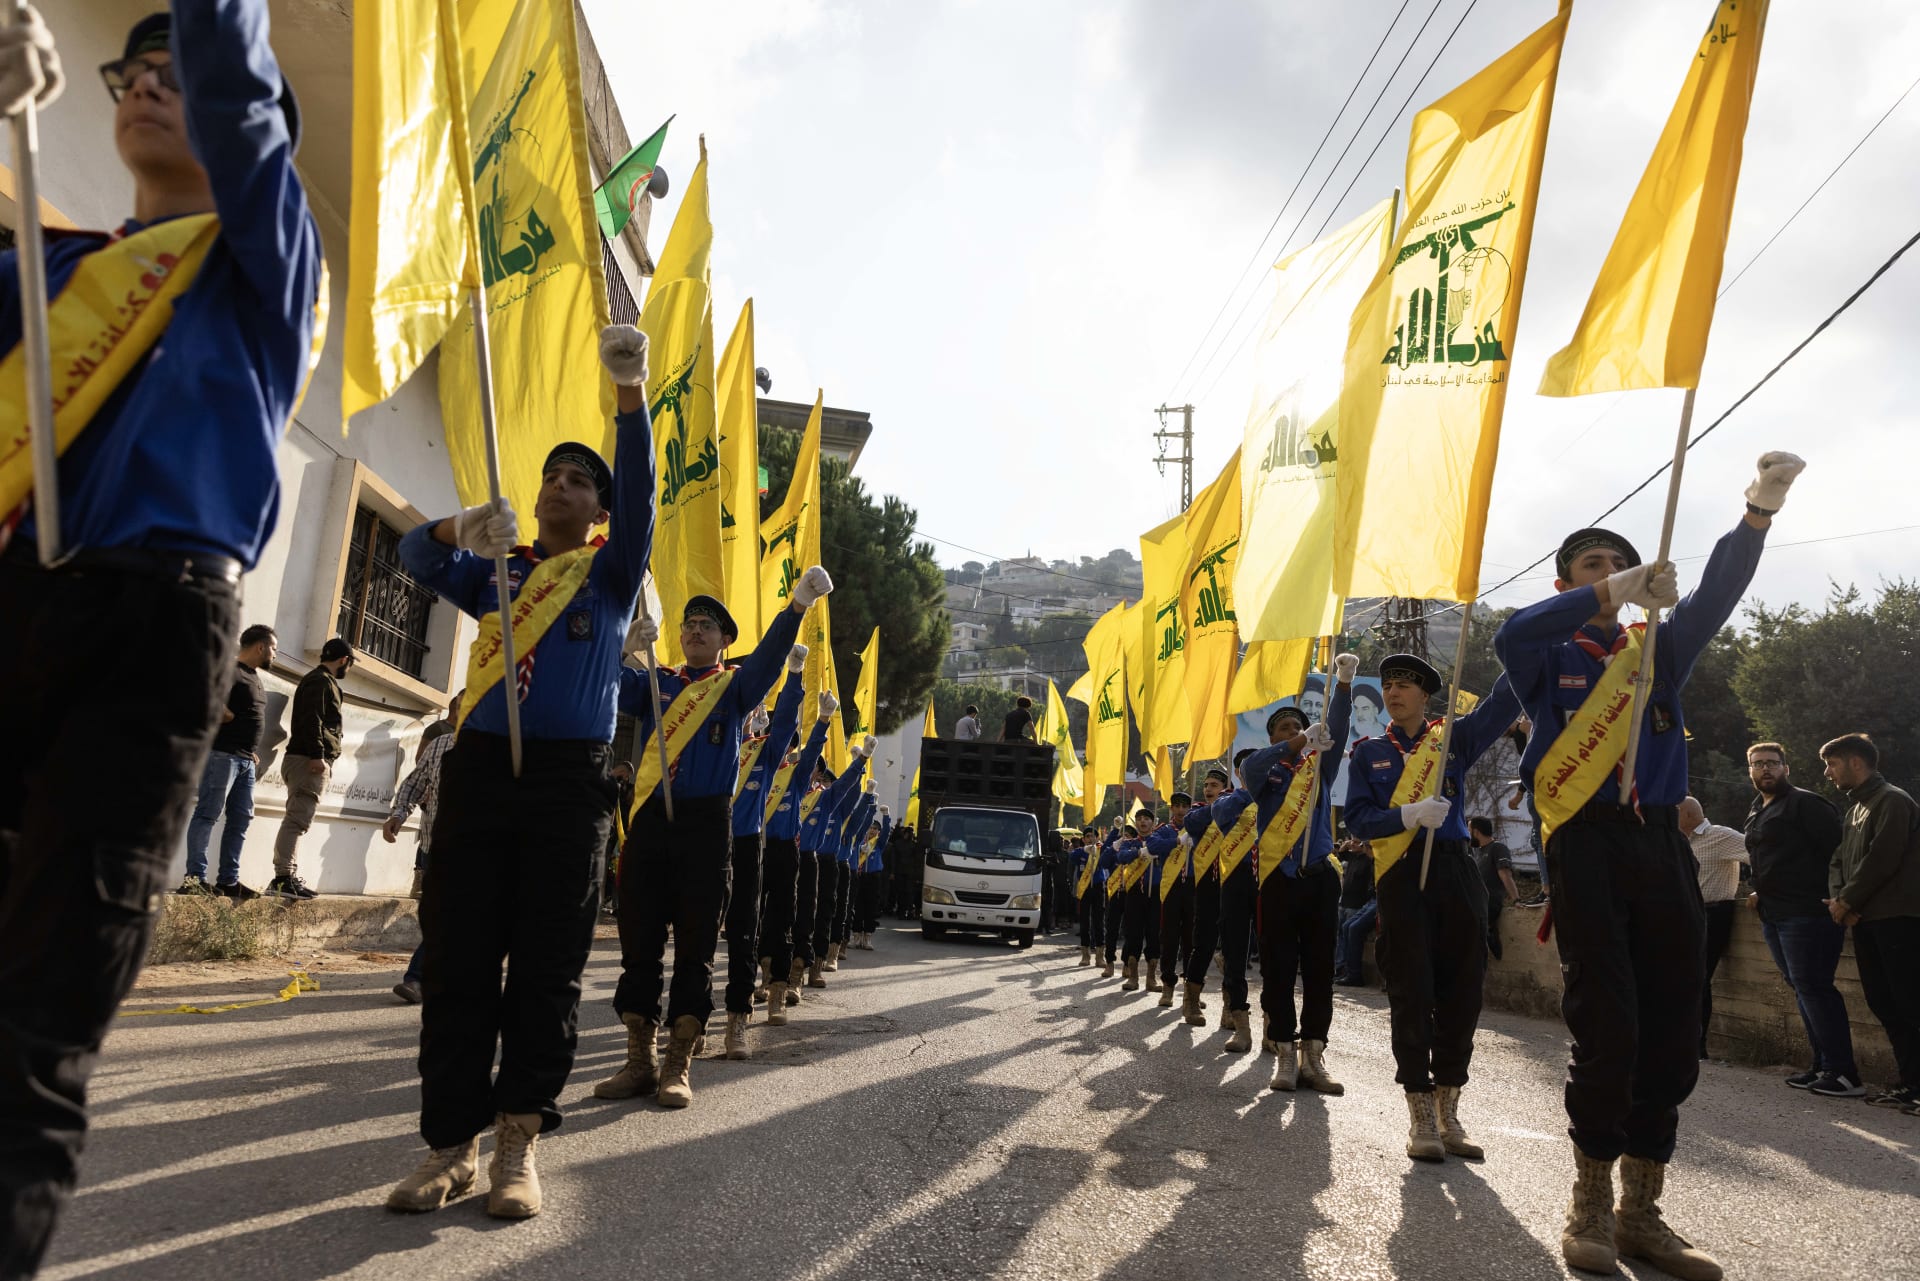 أول تعليق من نصرالله على استهداف عناصر وقيادات حزب الله من جانب إسرائيل: "الدم بالدم"